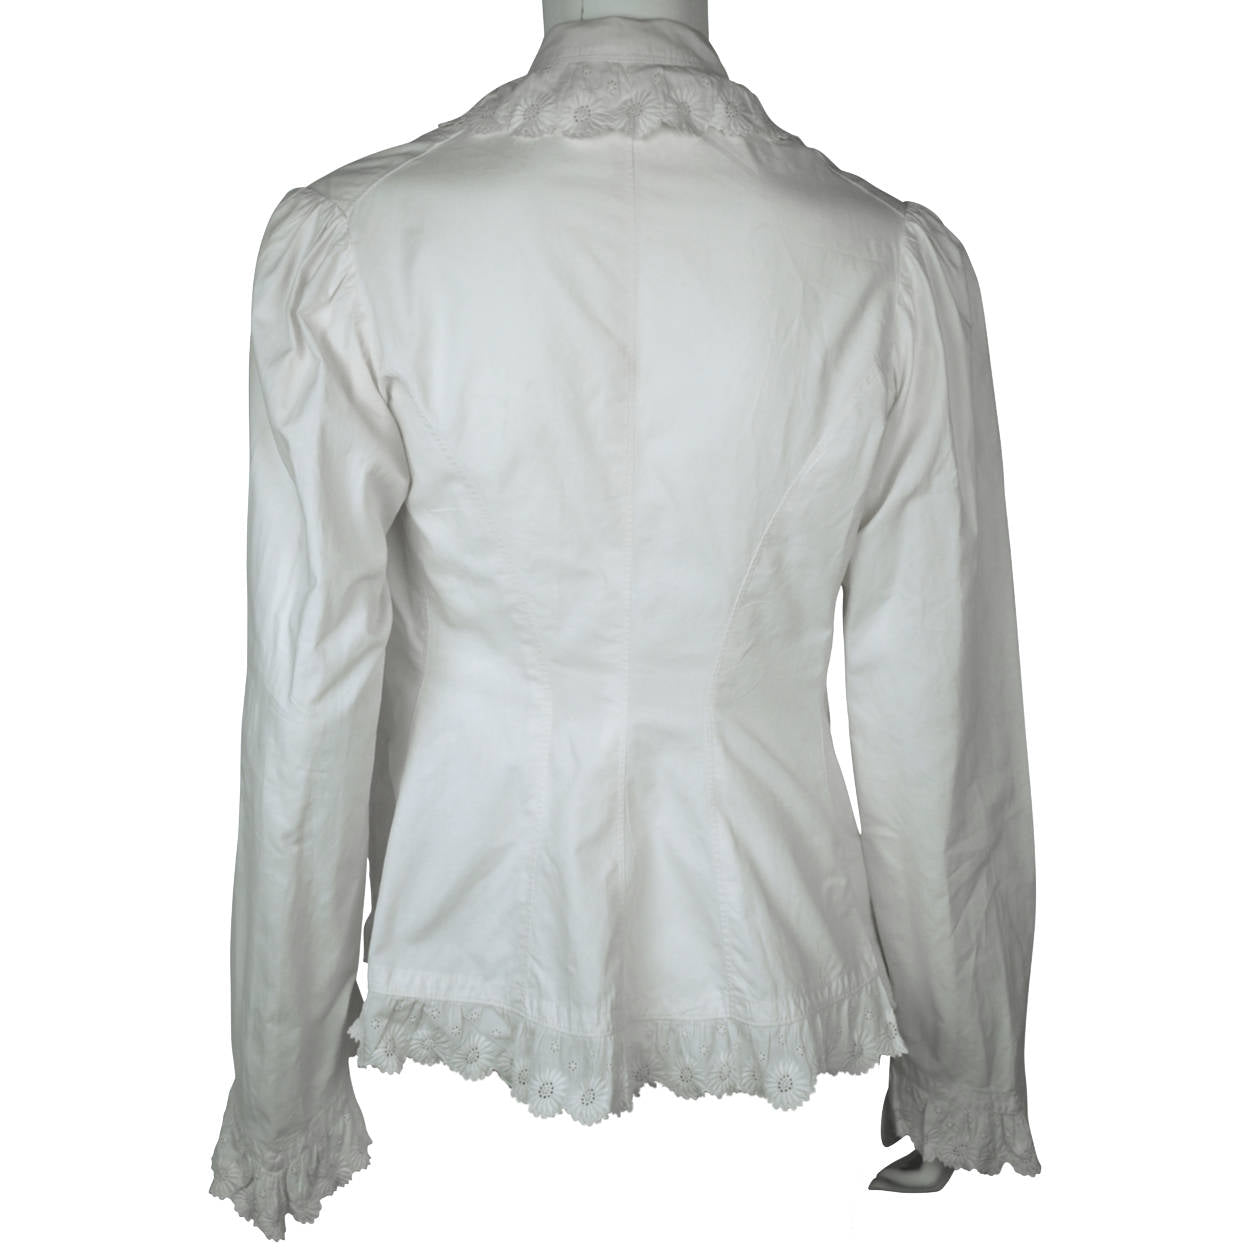 Antique Victorian Combing Jacket Blouse White Cotton Size M